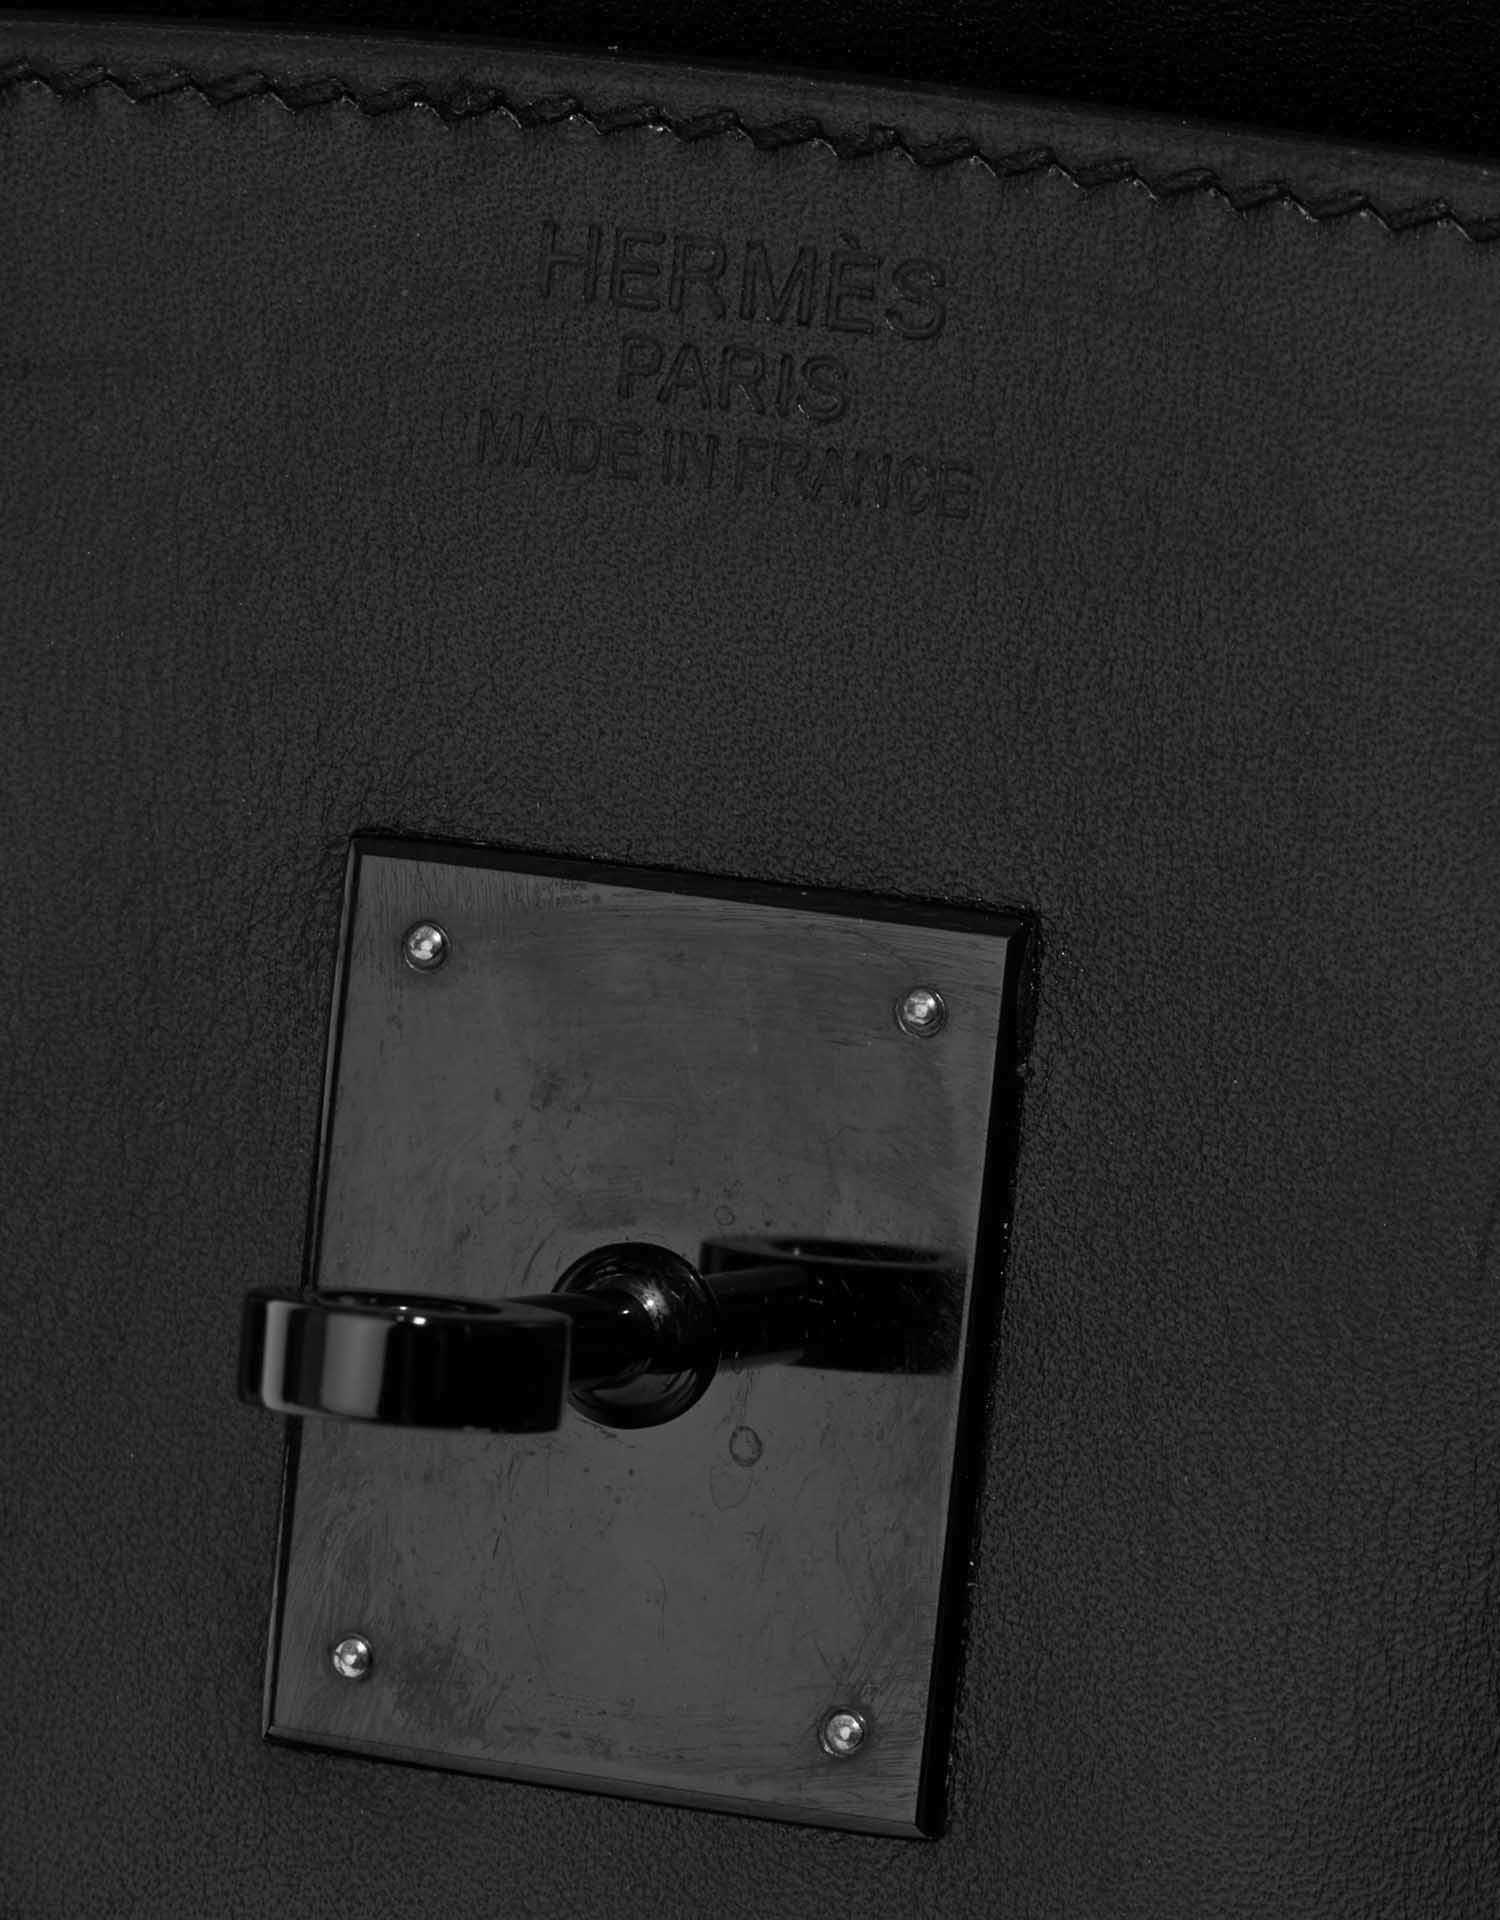 Hermes Birkin So Black Top Sellers, SAVE 35% 